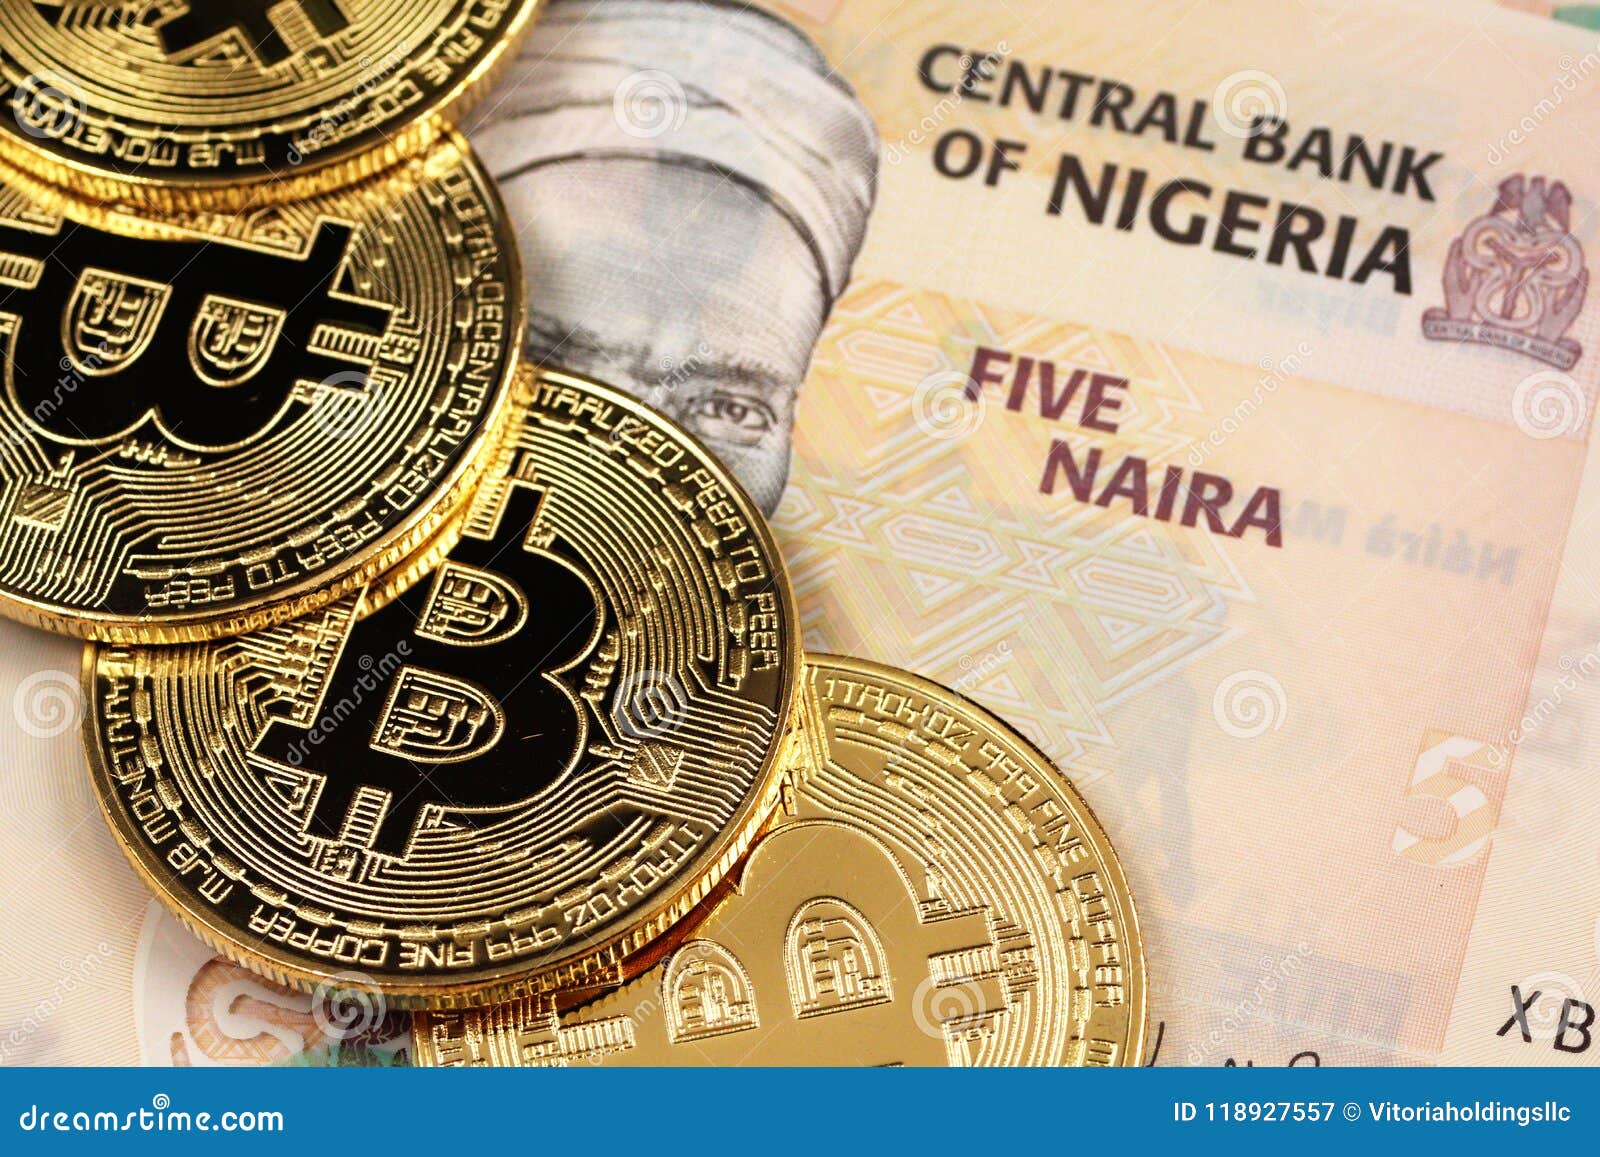 $5 bitcoin to naira